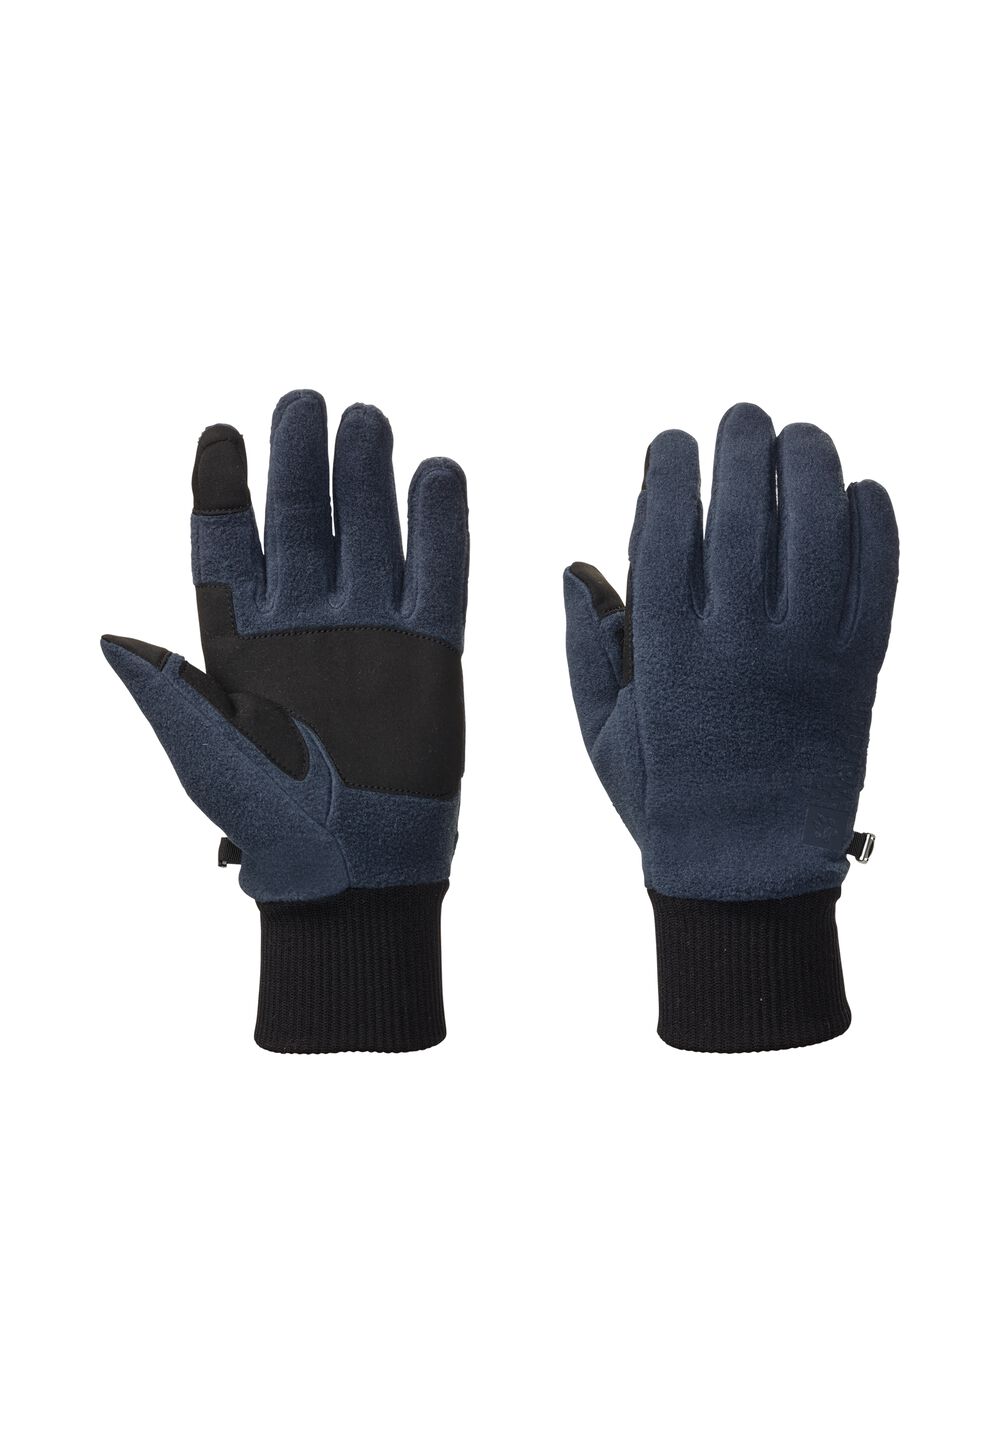 Jack Wolfskin Vertigo Glove Fleece handschoenen M blue night blue